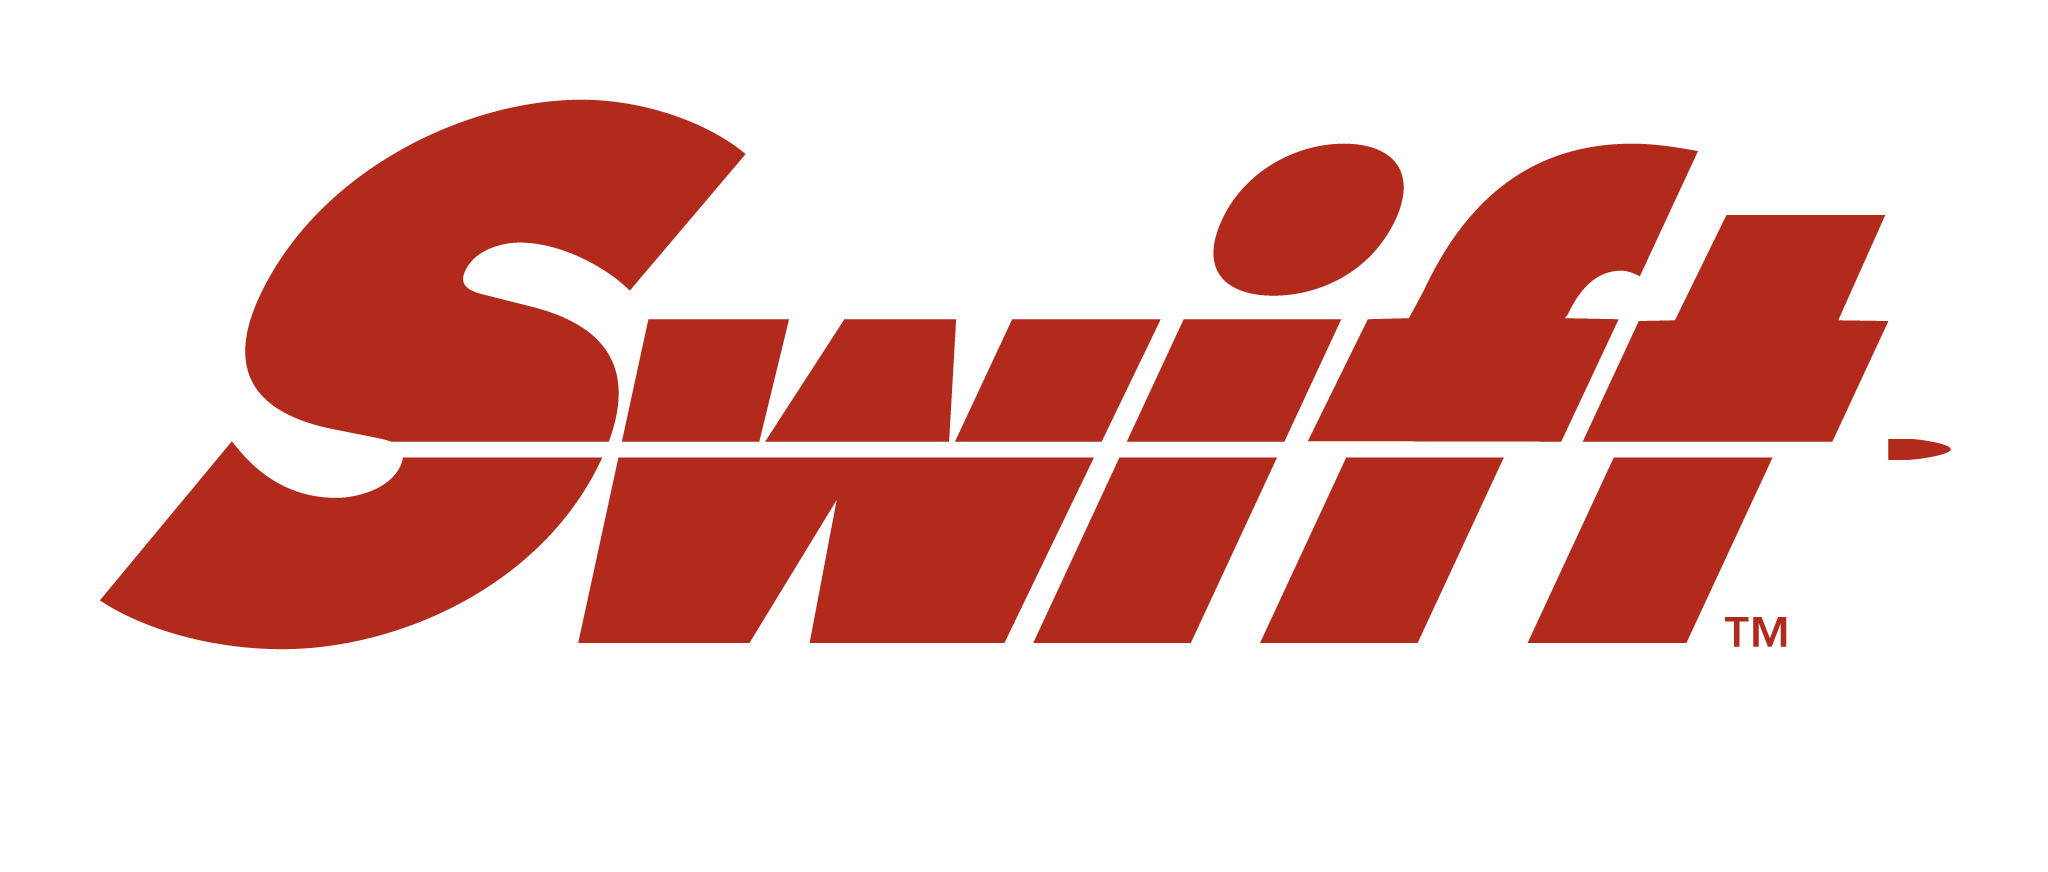 www.swiftbullets.com